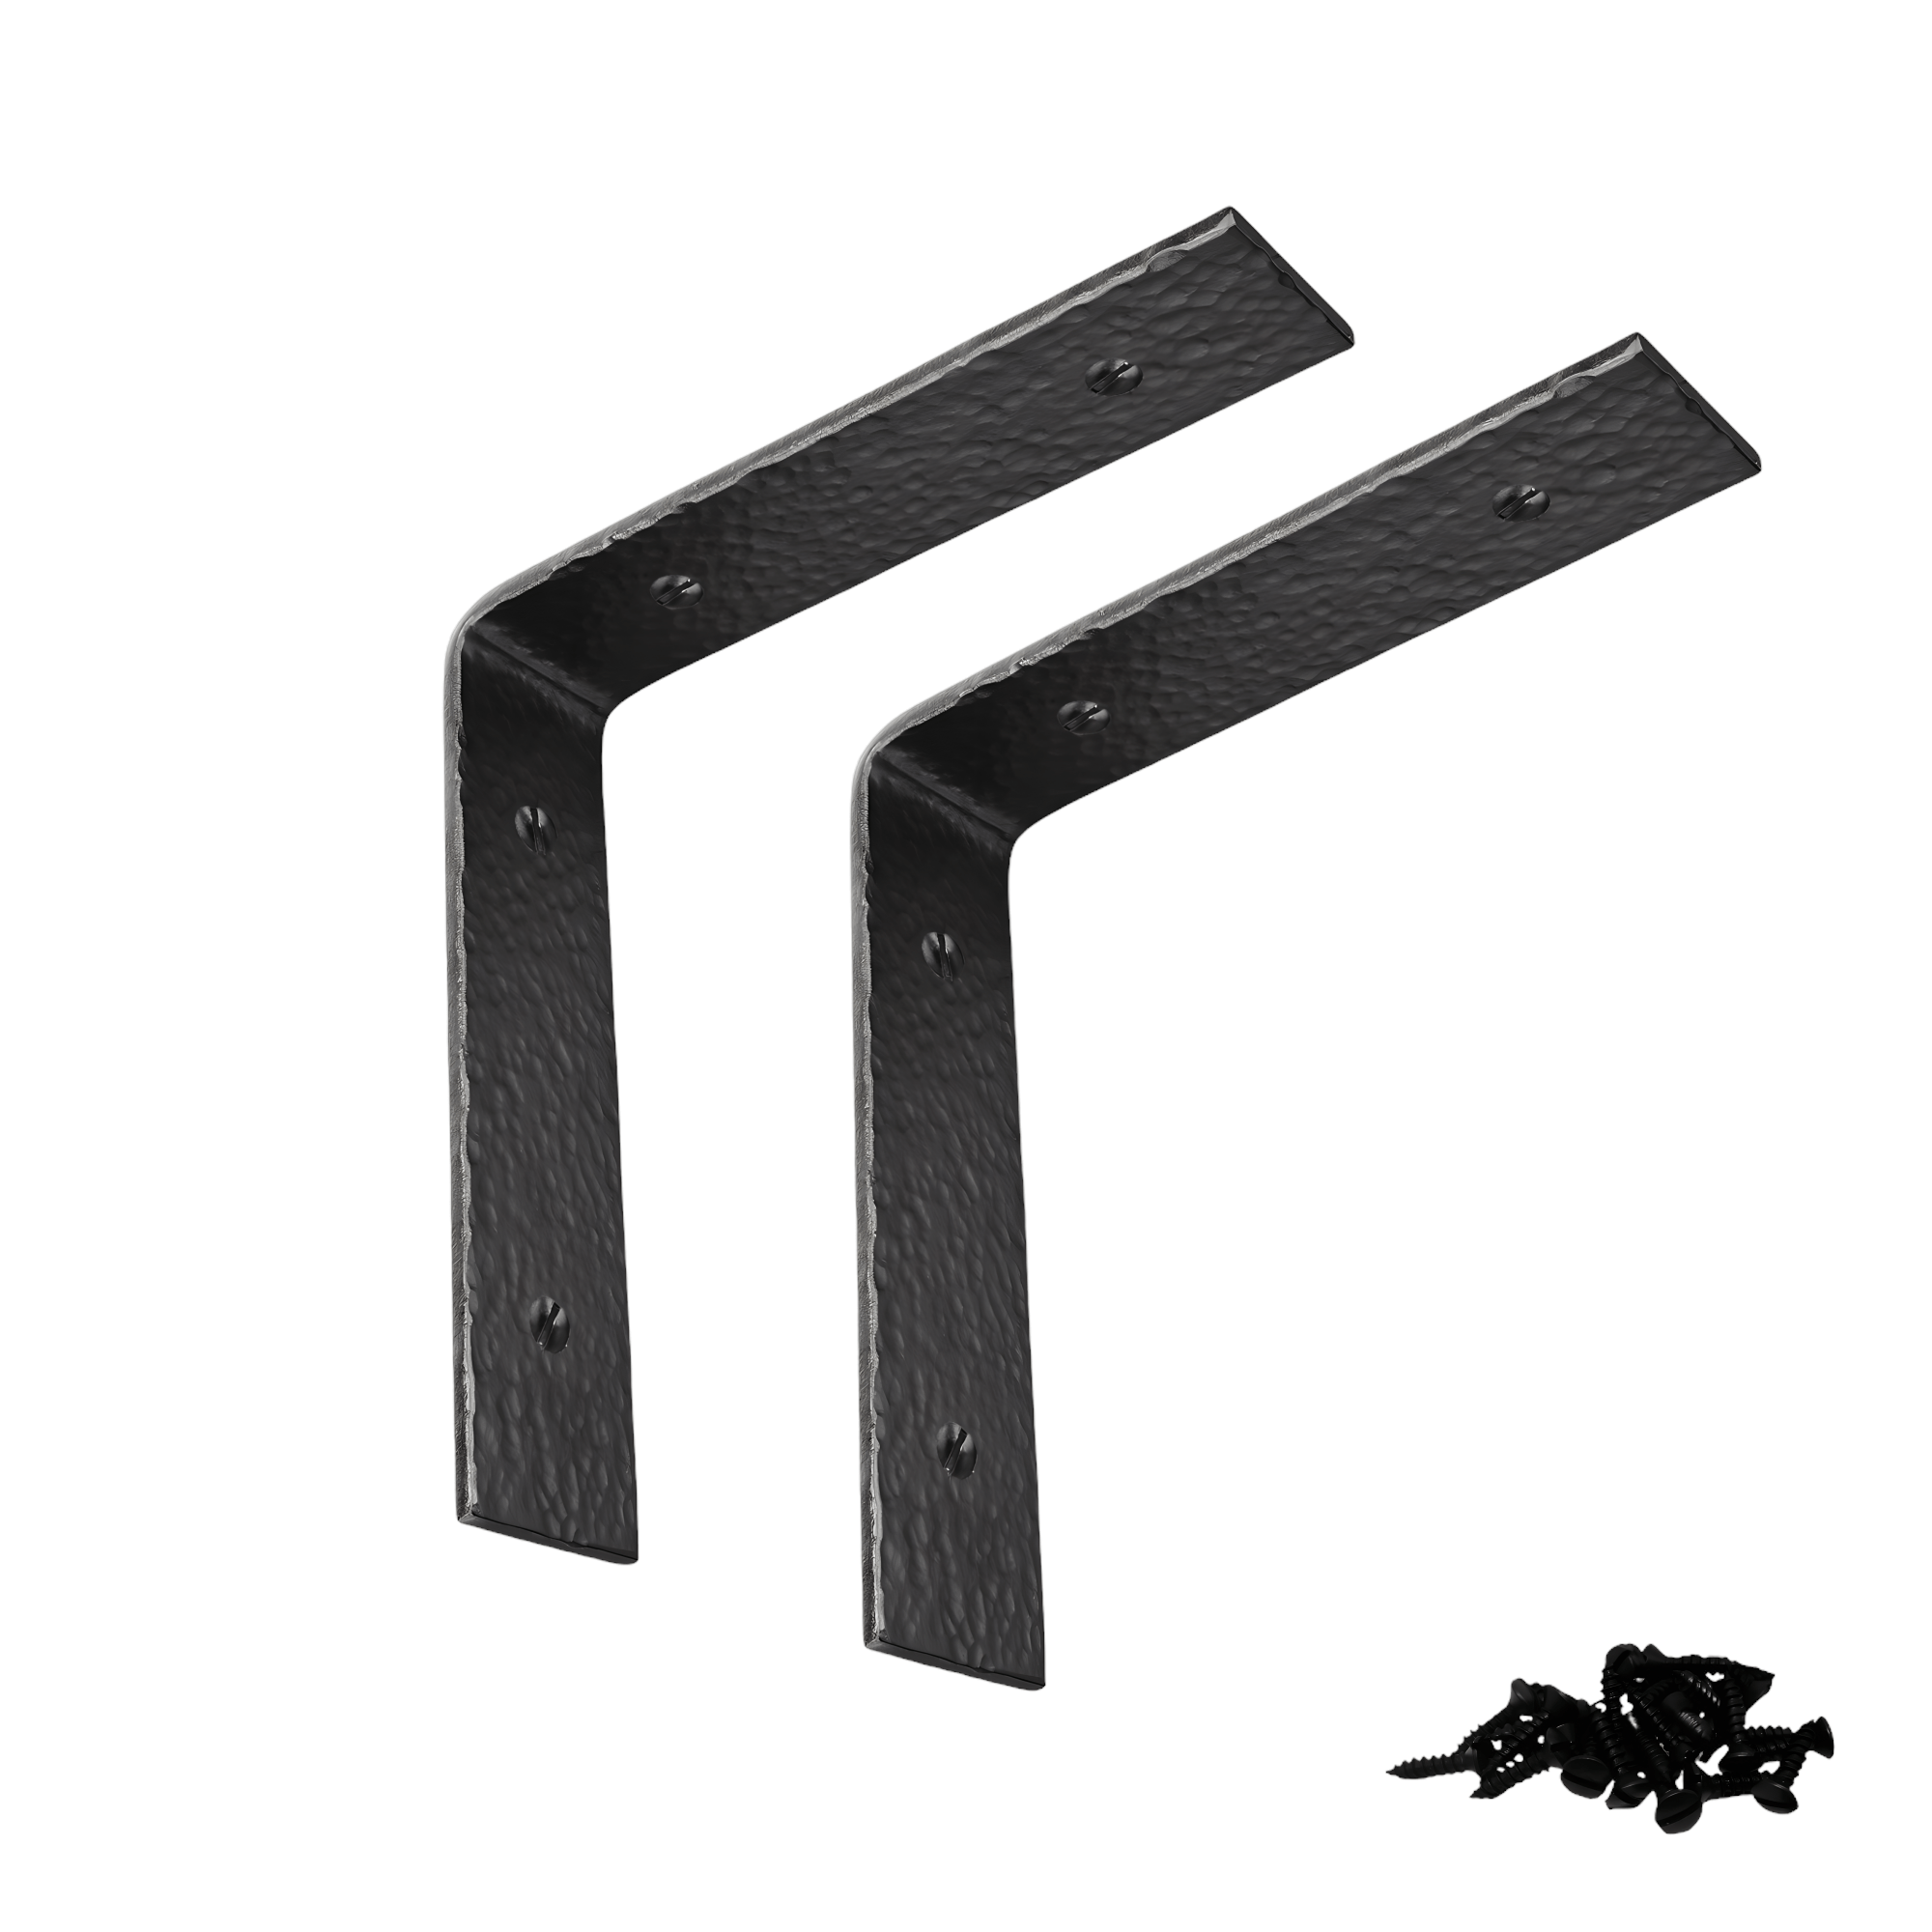 RHAFAYRE Pieces Industrial Shelf Brackets, 18cm/7.1inch Metal Wall